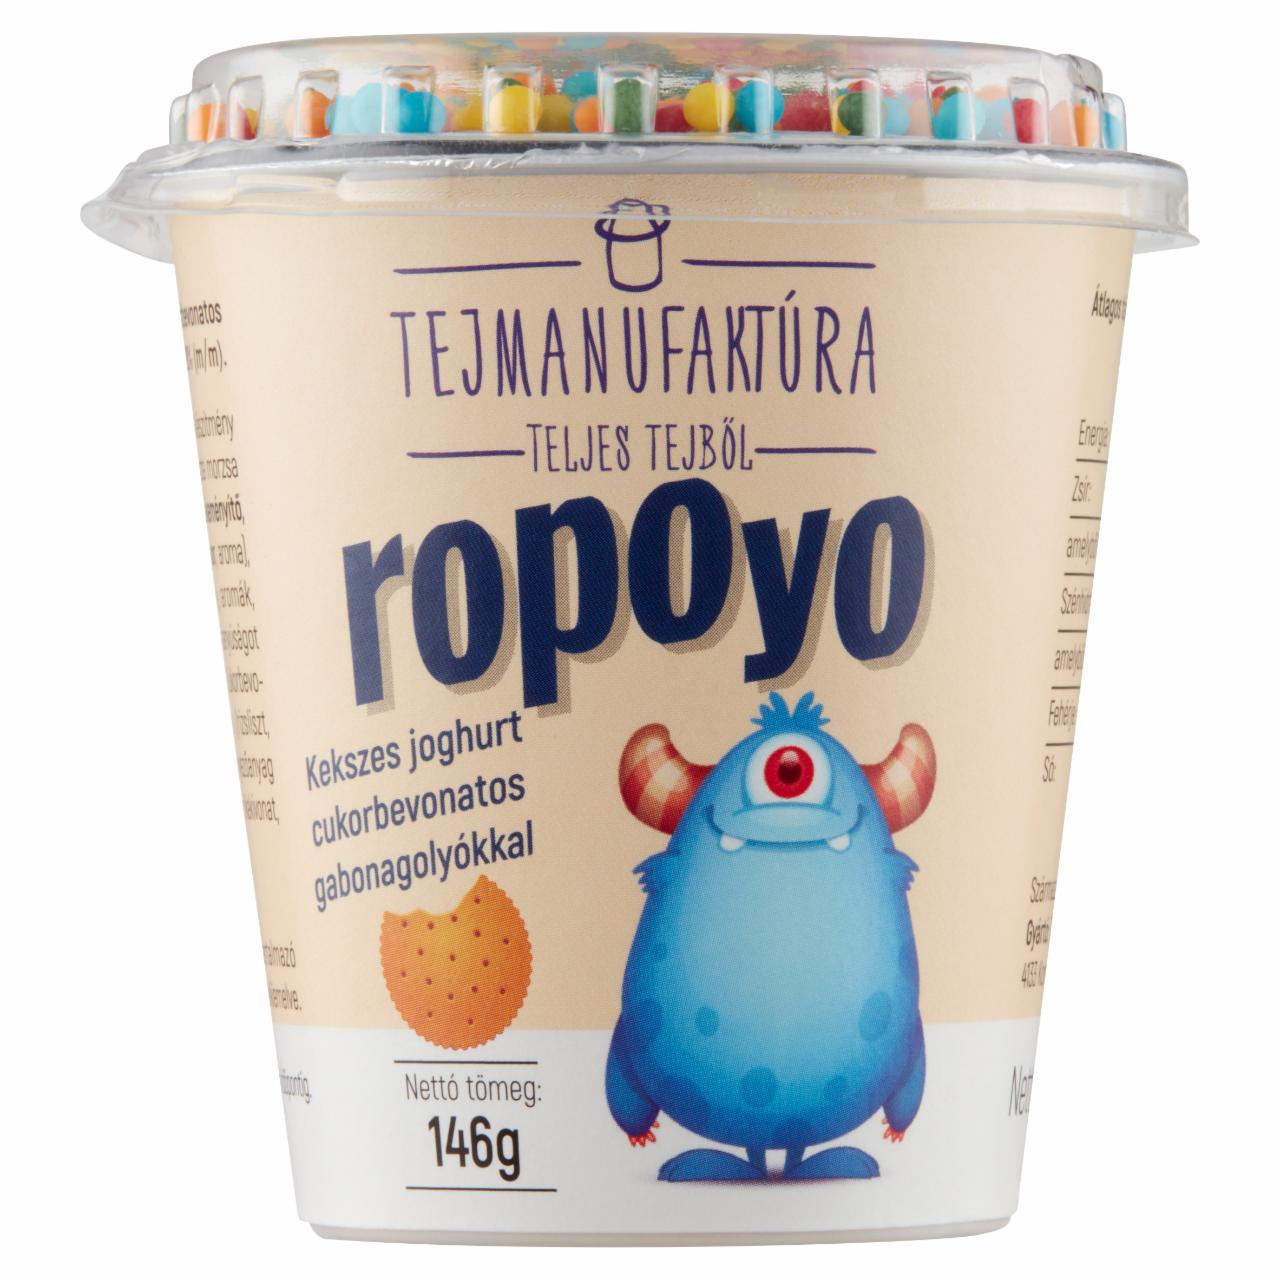 Képek - Tejmanufaktúra Ropoyo kekszes joghurt cukorbevonatos gabonagolyókkal 146 g